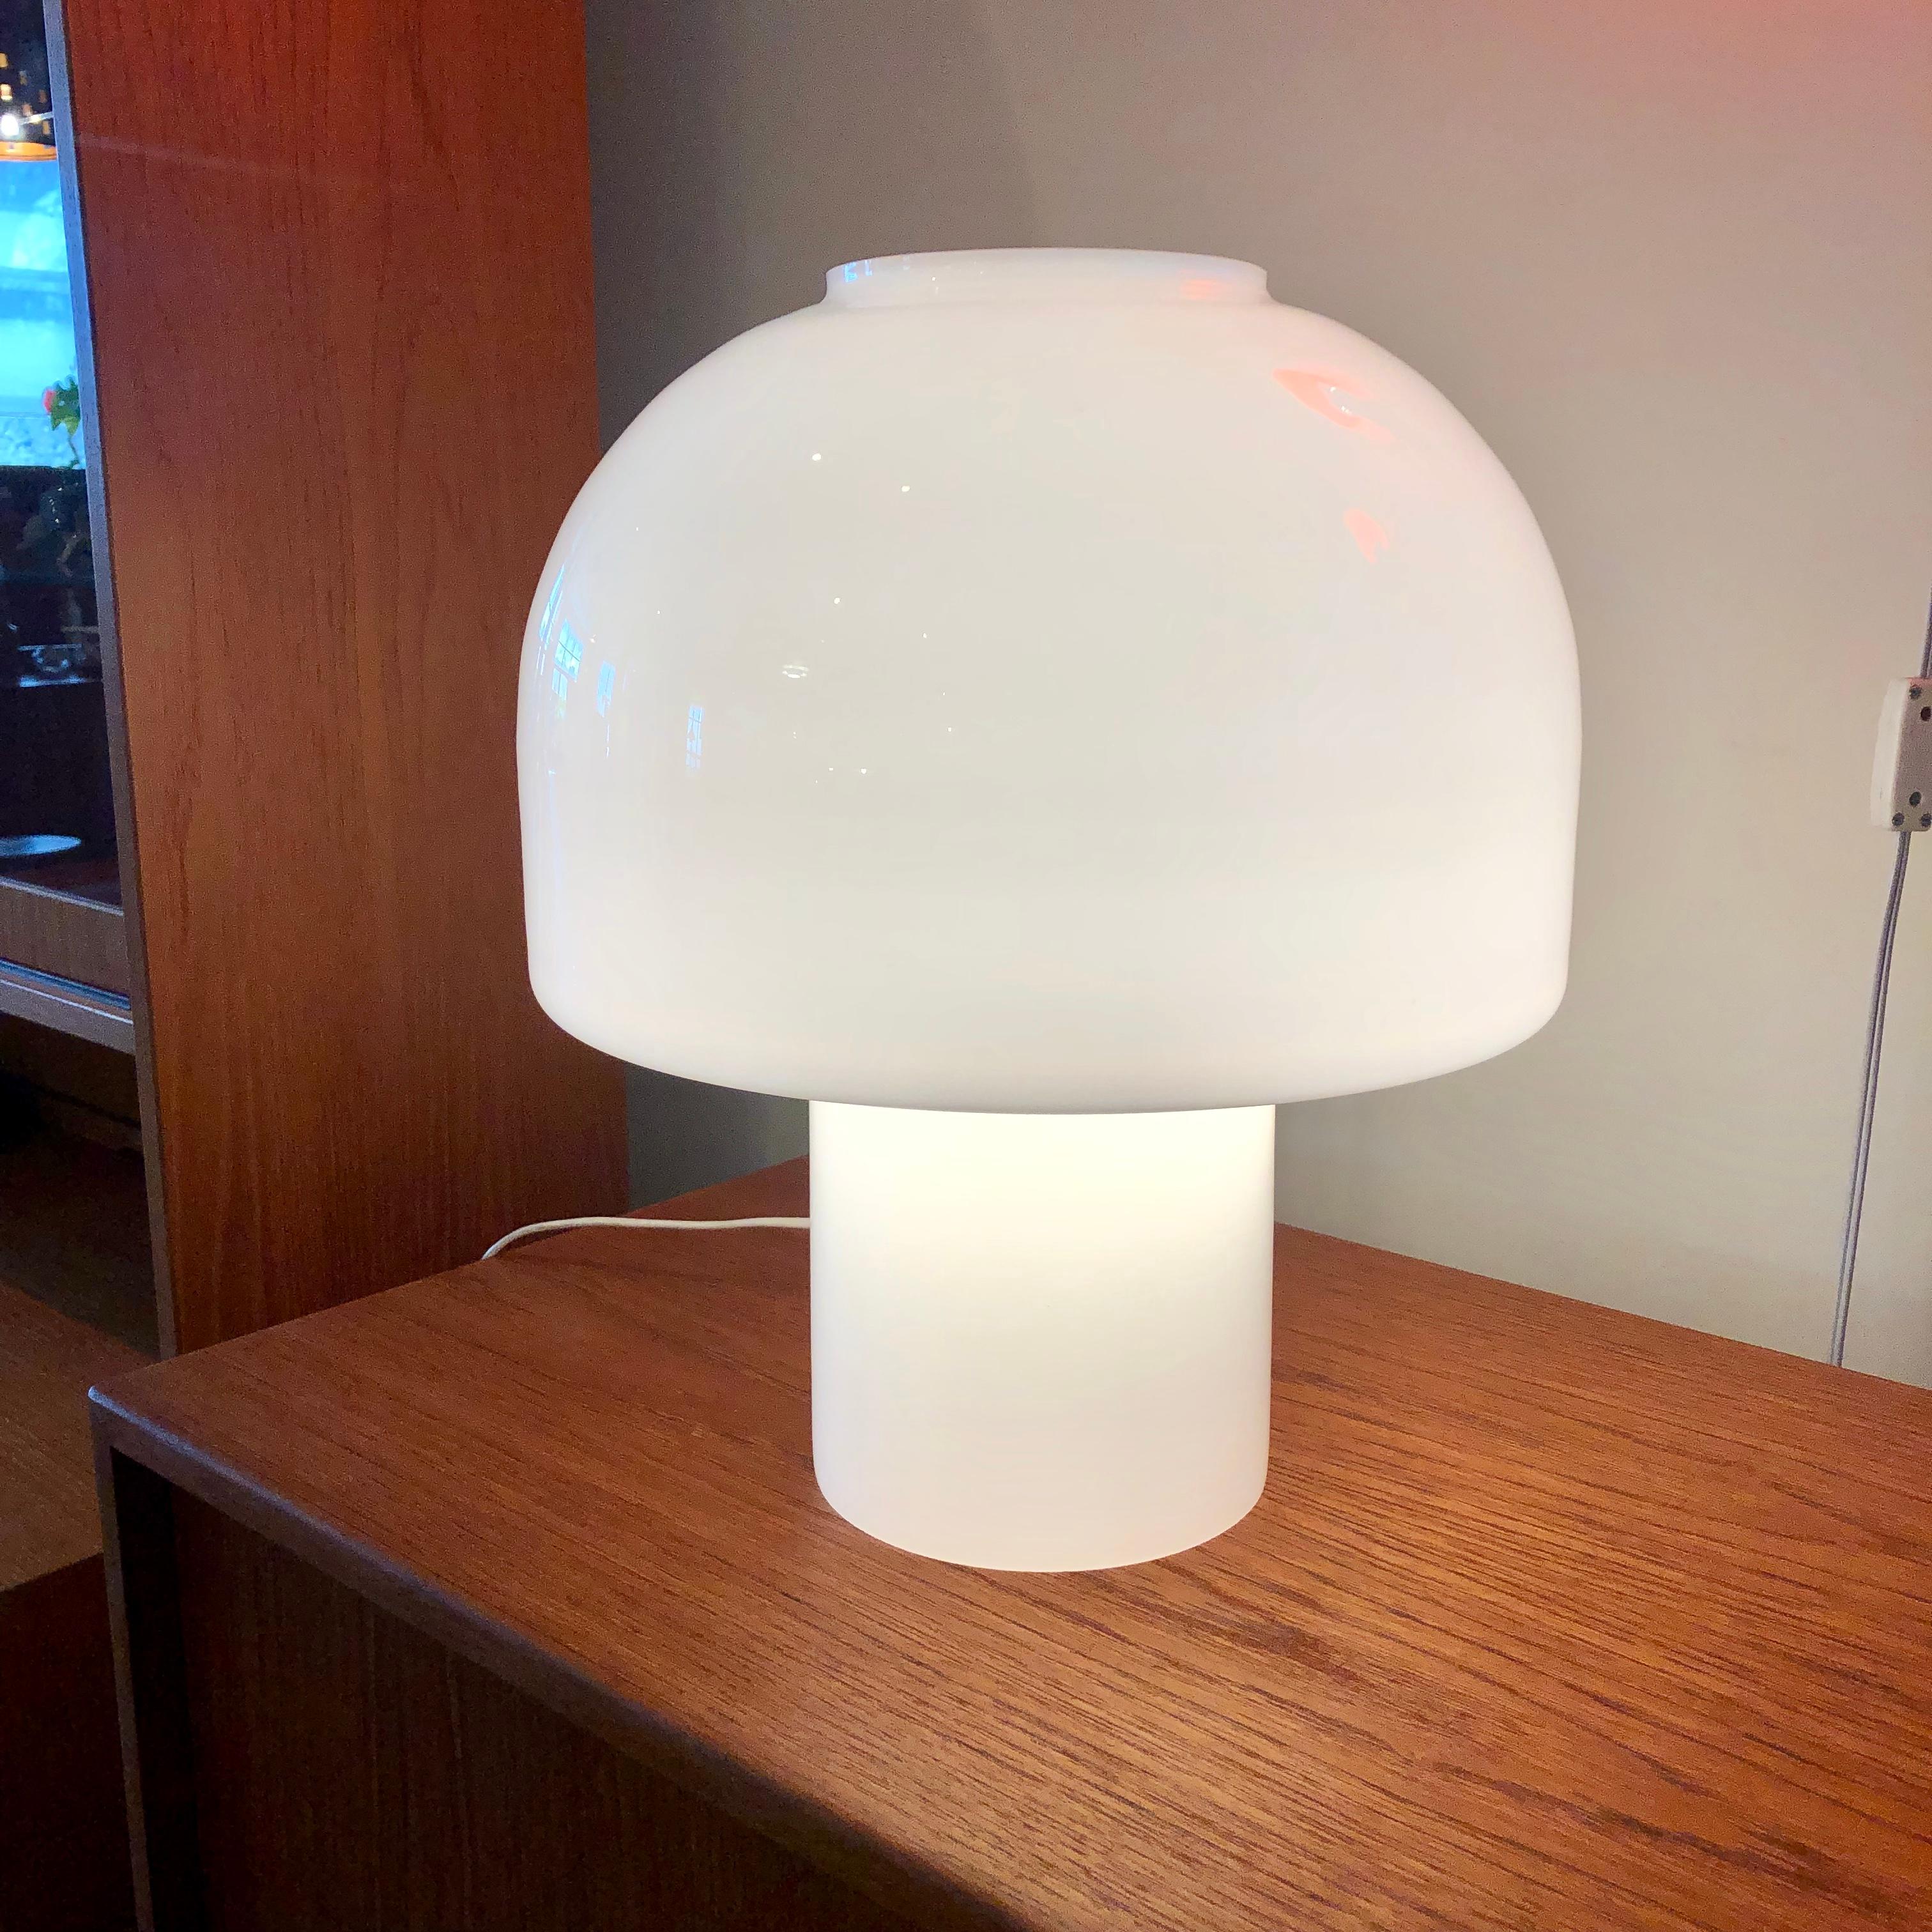 Mushroom shaped milk glass casts a soft glowing light.